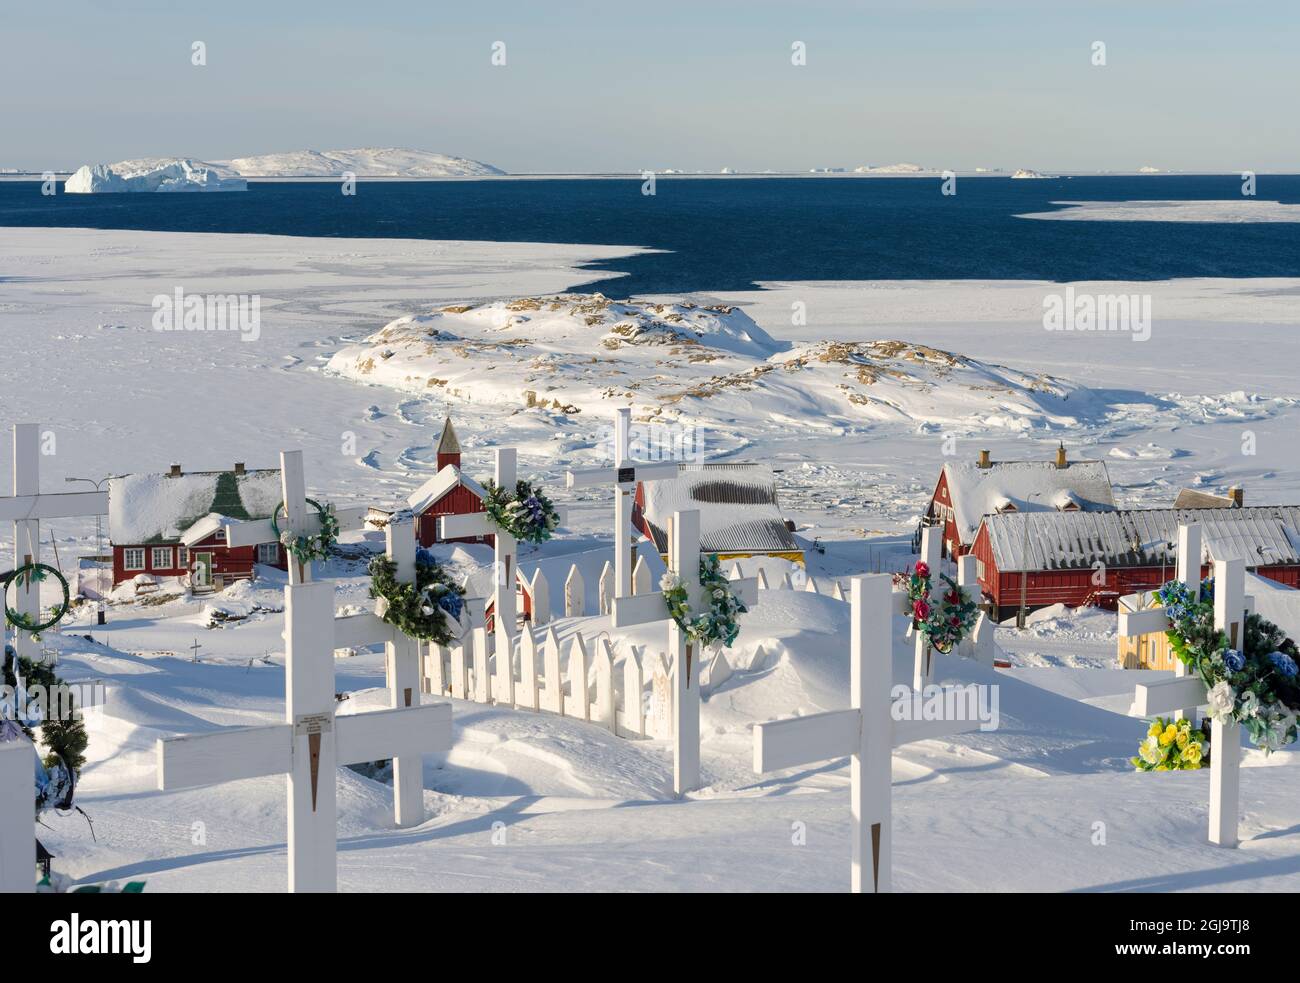 Friedhof. Winter in der Stadt Upernavik im Norden Grönlands am Ufer der Baffin Bay. Dänemark, Grönland. (Nur Für Redaktionelle Zwecke) Stockfoto